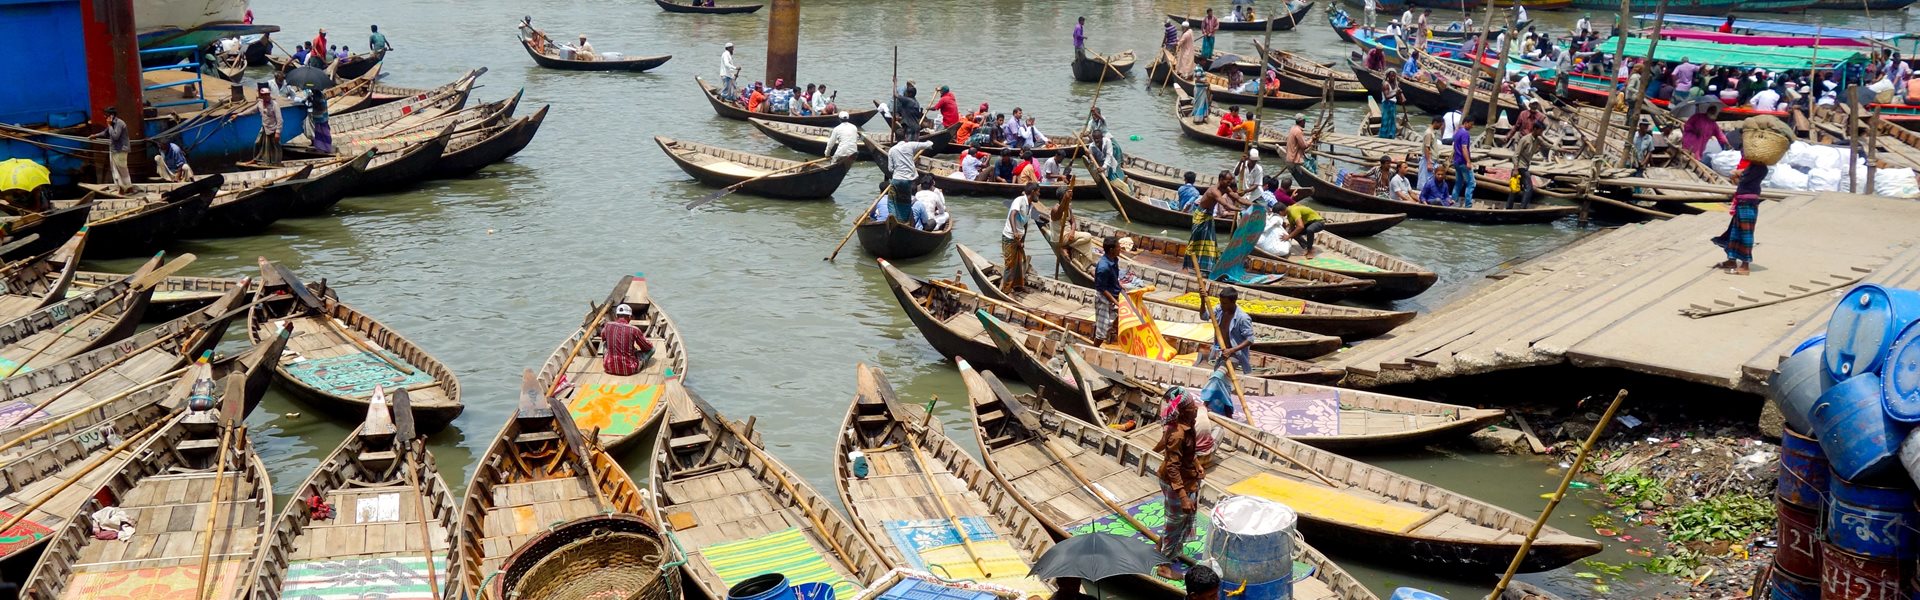 Bangladesh-river-city-life-boats